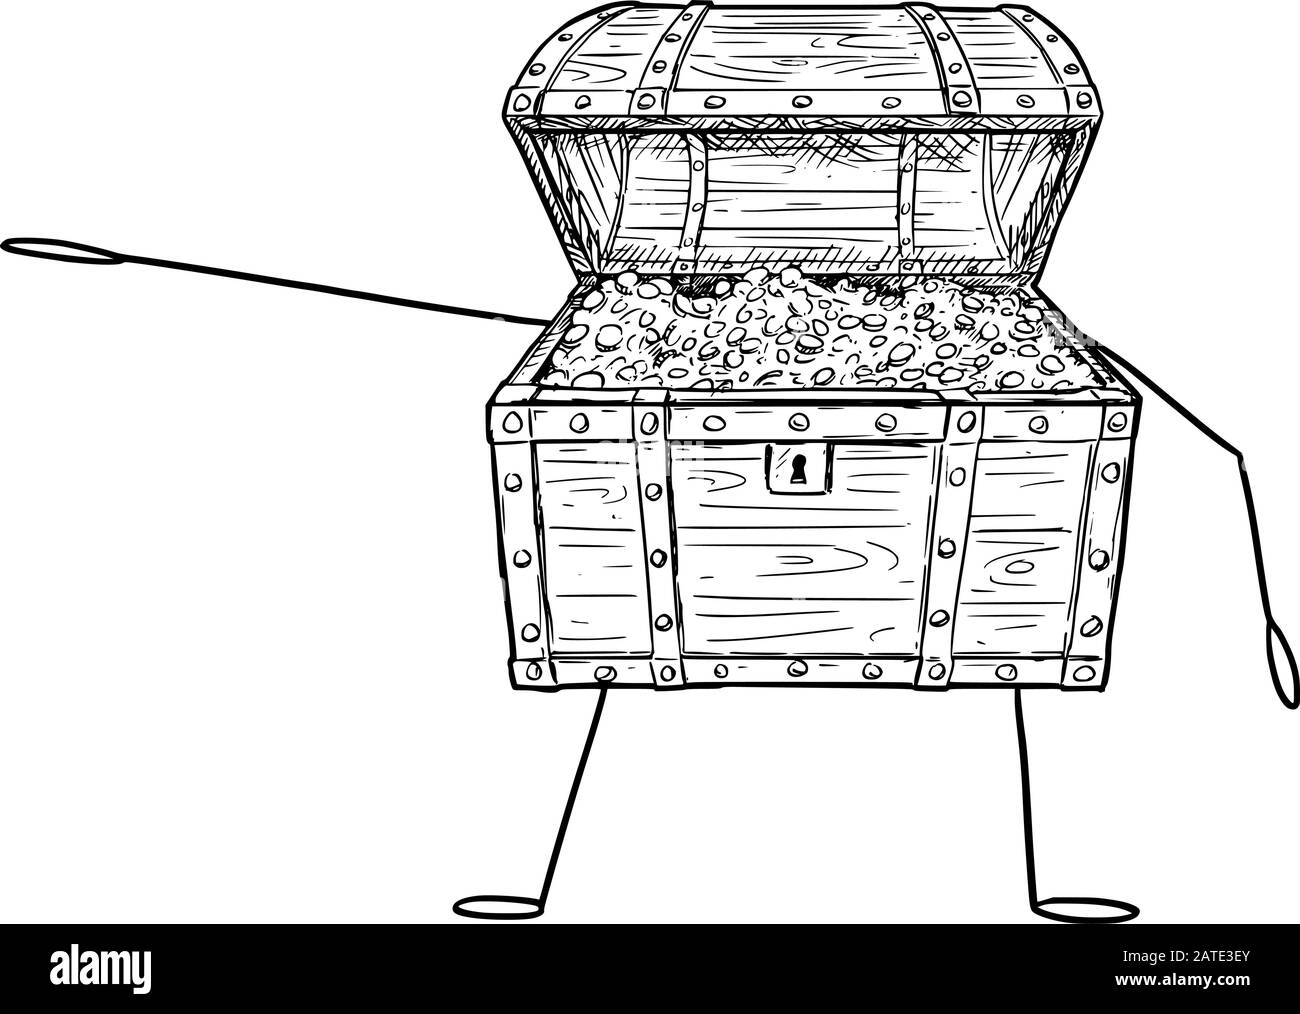 Illustration vectorielle d'un personnage de poitrine de pirate de Trésor ouvert de caricature plein de pièces d'or montrant ou pointant vers quelque chose à la main. Publicité ou marketing économique ou financier. Illustration de Vecteur